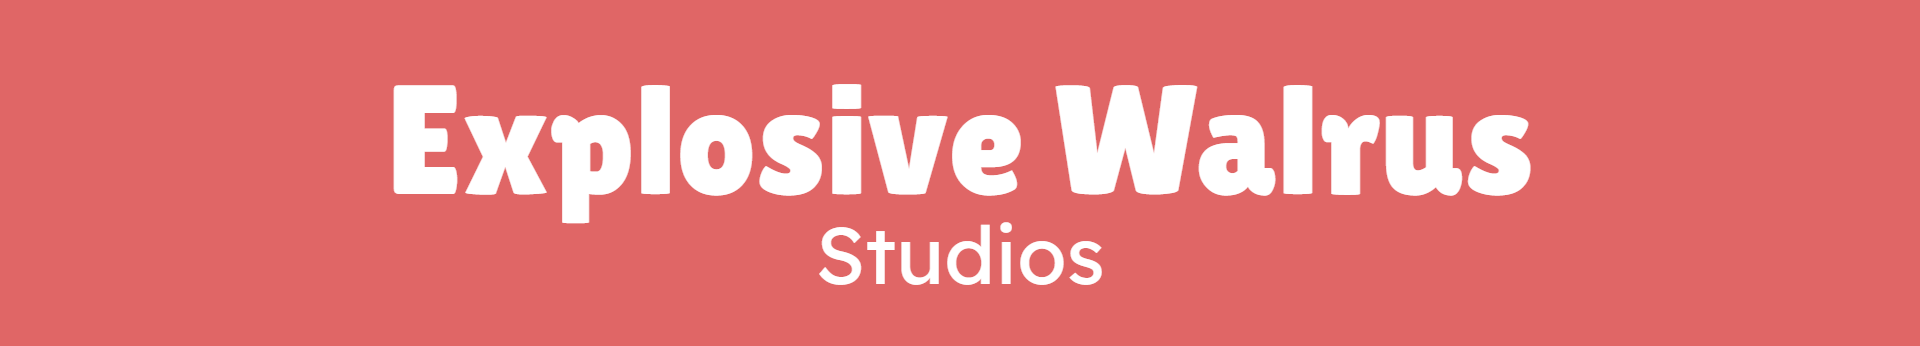 Explosive Walrus Studios Banner